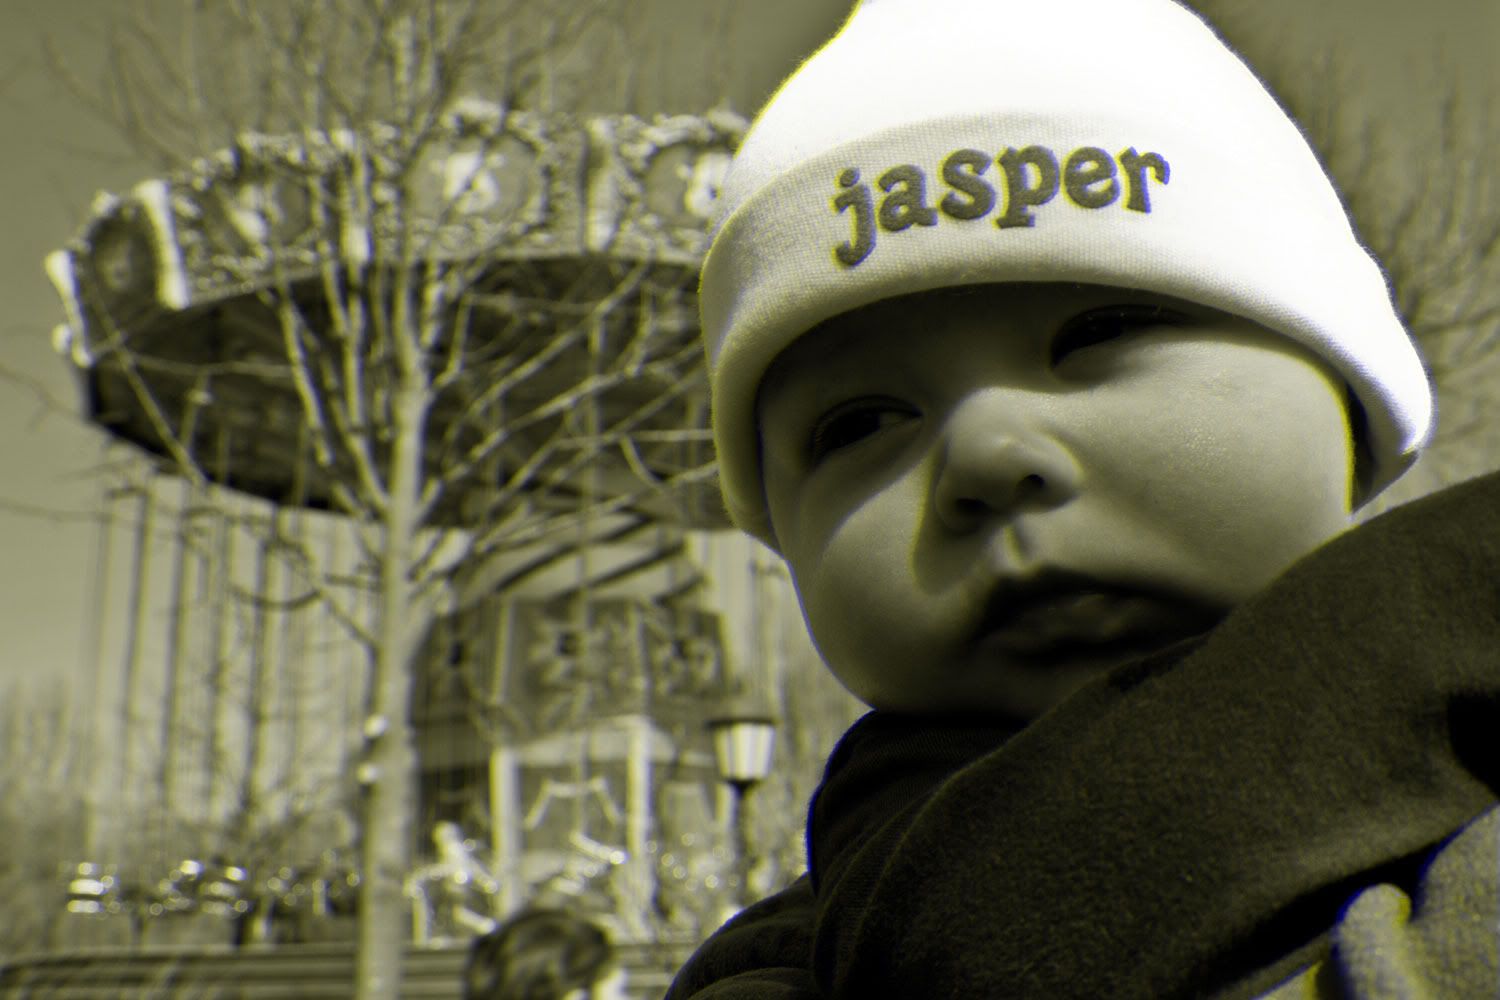 Jasper in 3D